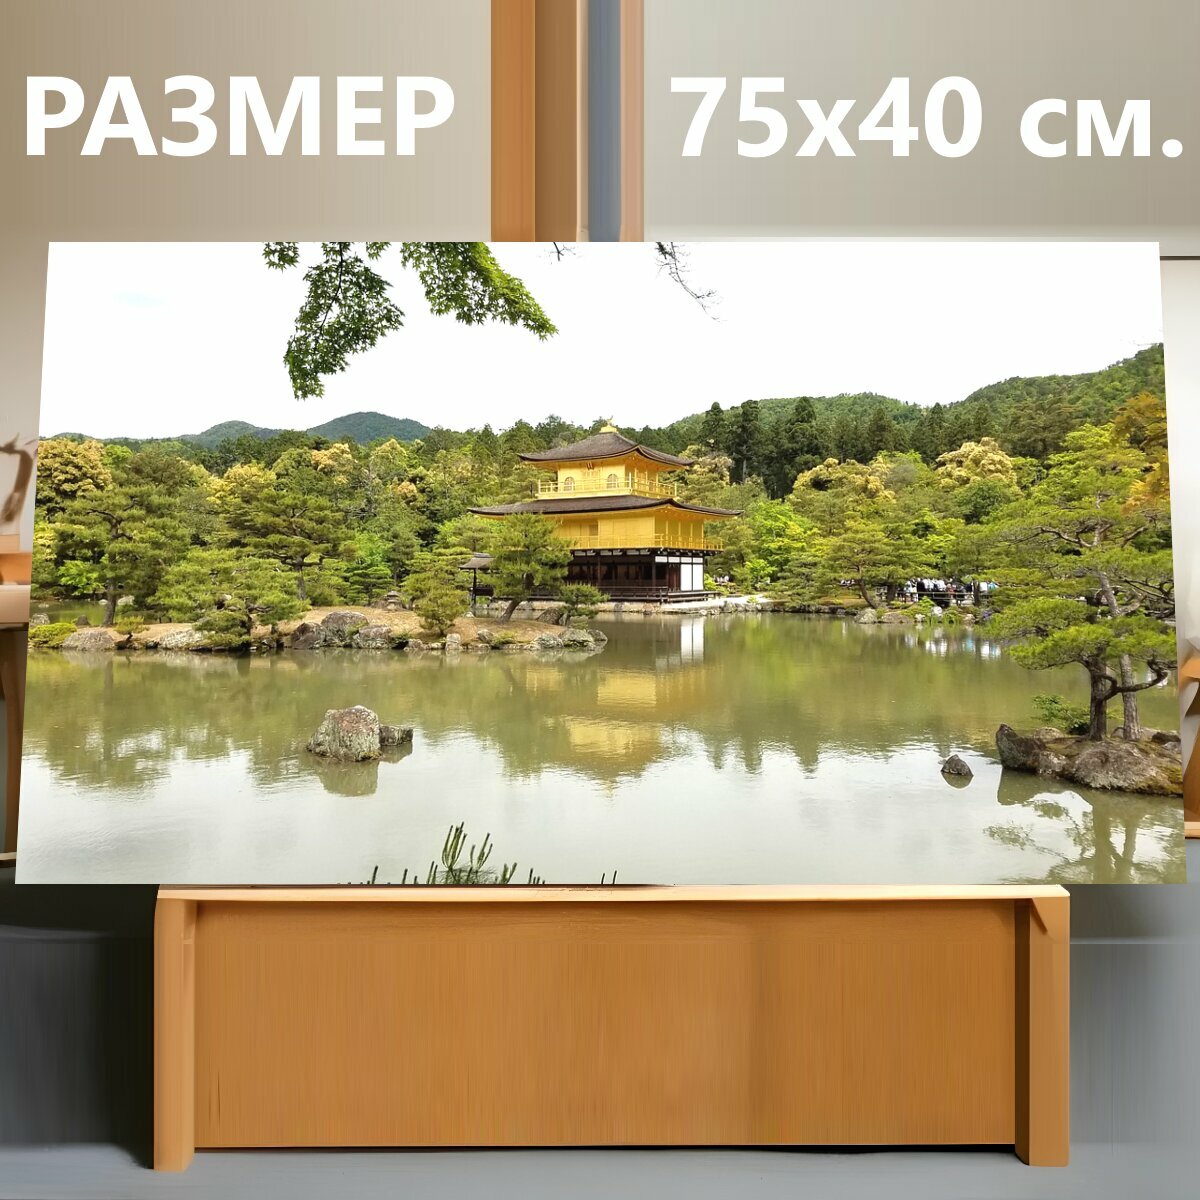 Картина на холсте "Храм, киото, япония" на подрамнике 75х40 см. для интерьера